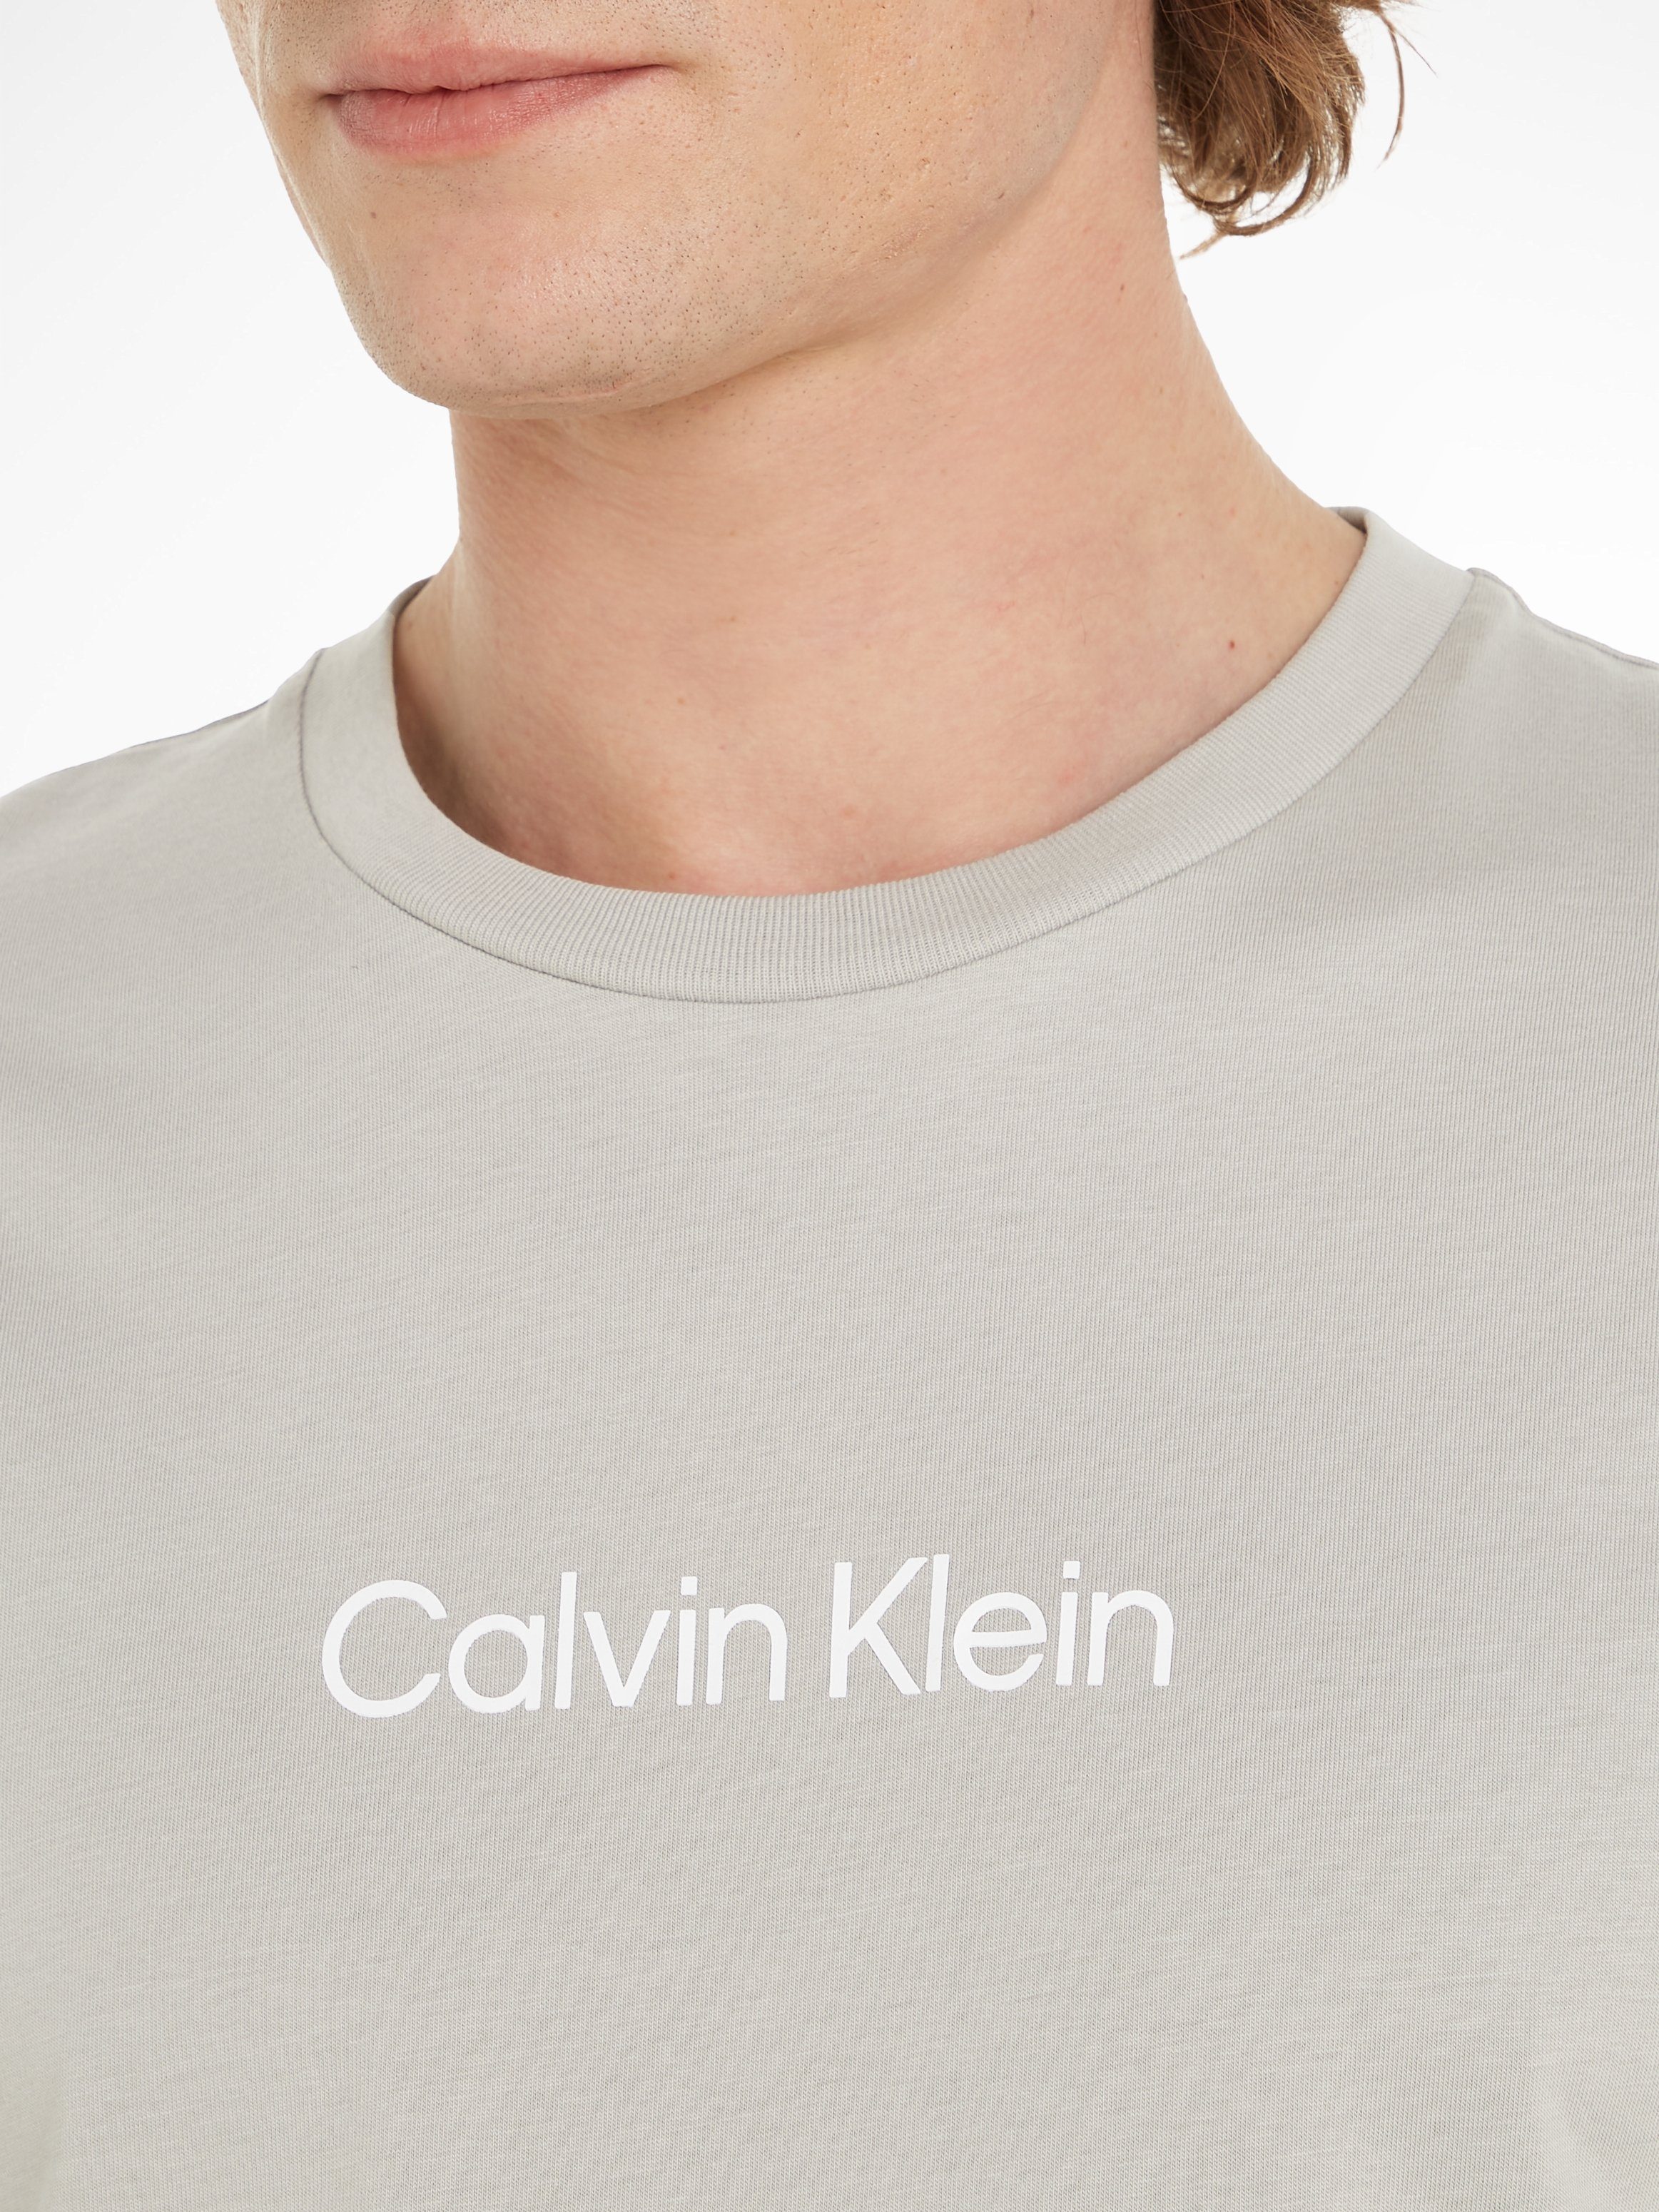 Calvin Klein T-Shirt HERO LOGO aufgedrucktem mit T-SHIRT Gray COMFORT Ghost Markenlabel